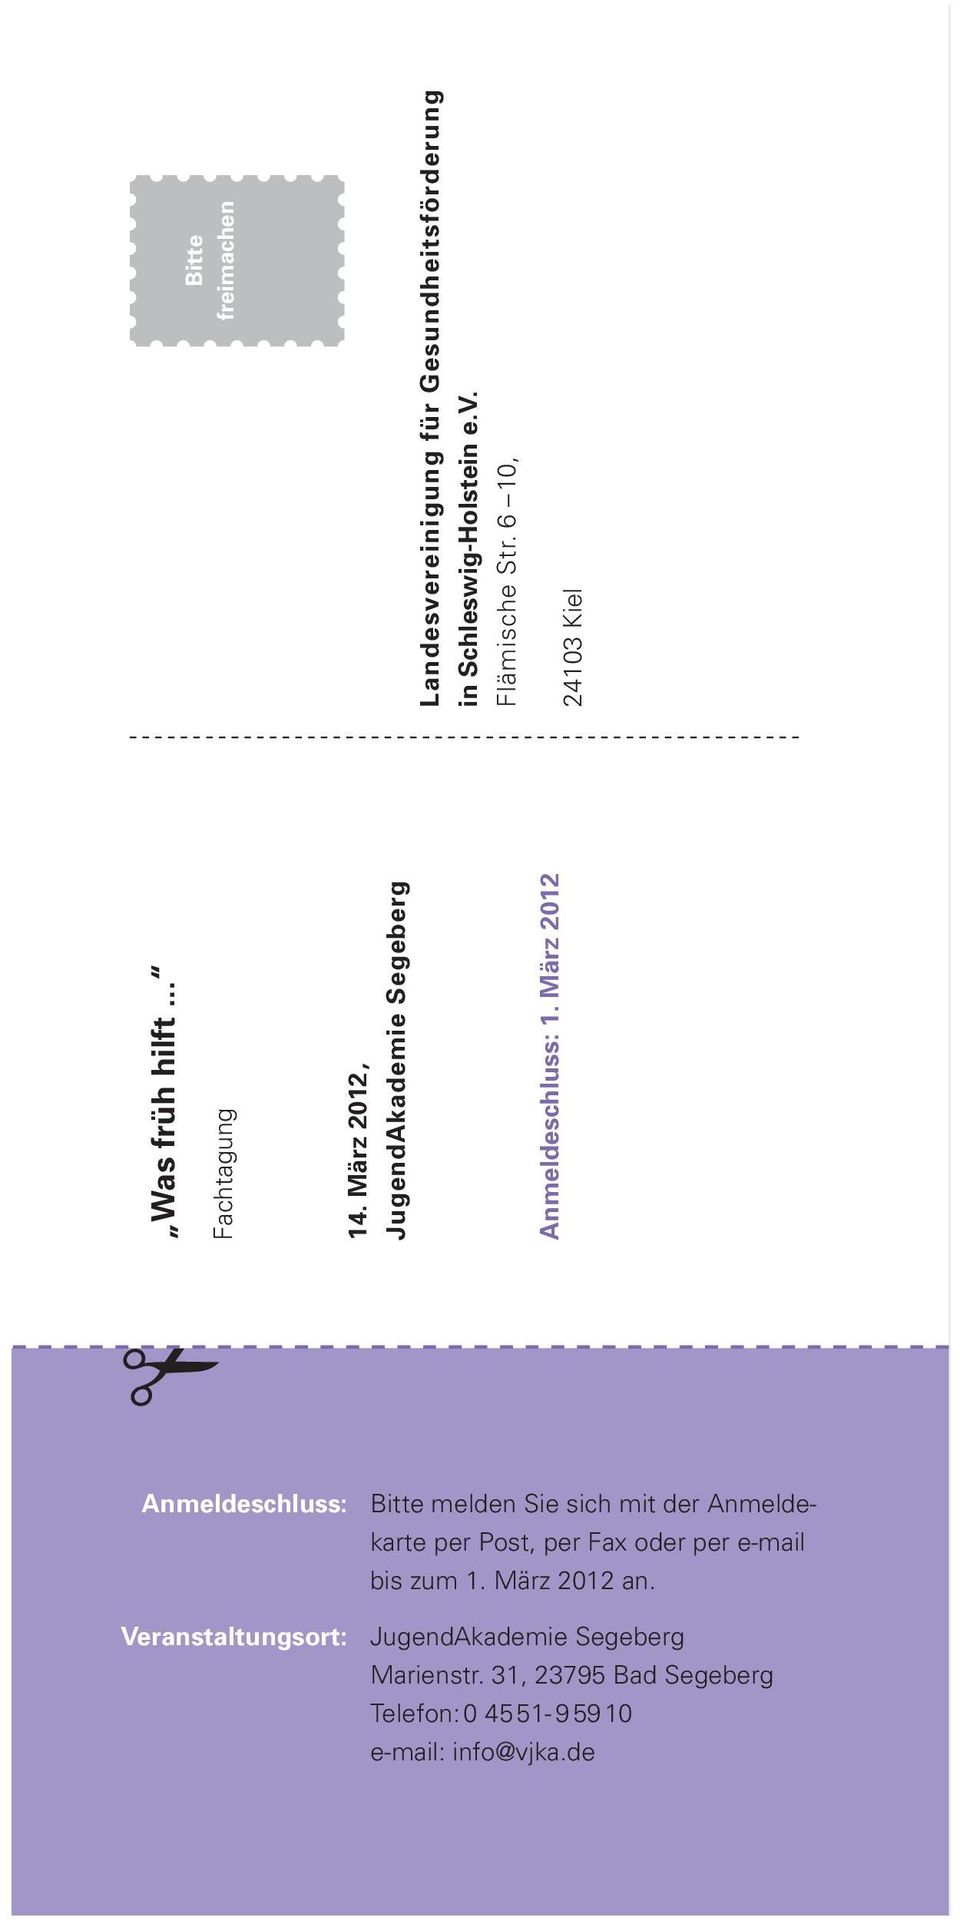 6 10, 24103 Kiel Anmeldeschluss: Bitte melden Sie sich mit der Anmeldekarte per Post, per Fax oder per e-mail bis